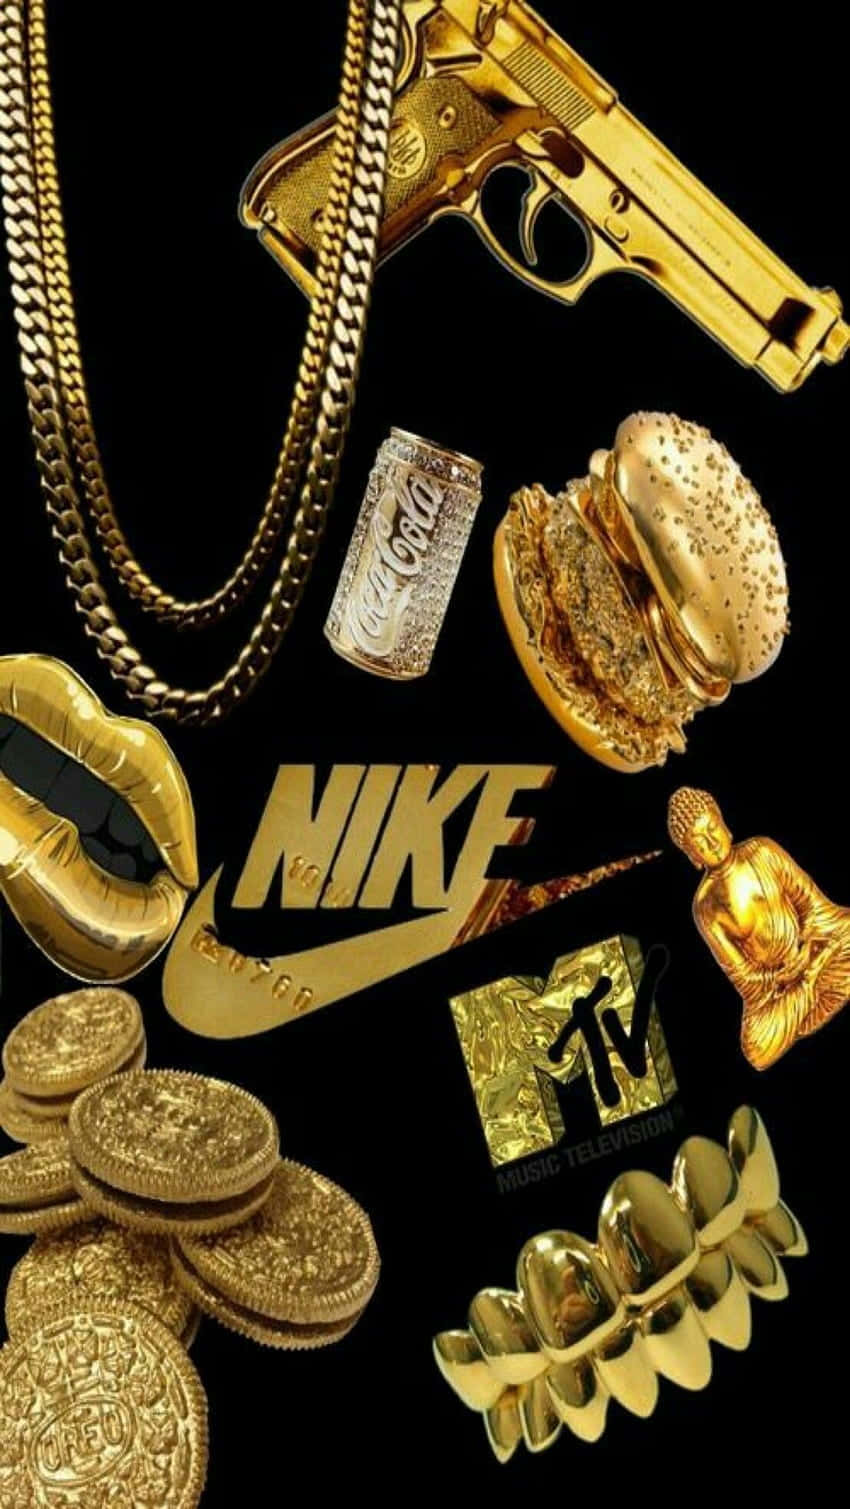 Nike Gold - Nike Gold - Gold - Gold - Gold - Gold - Gold - Gold - Gold Wallpaper